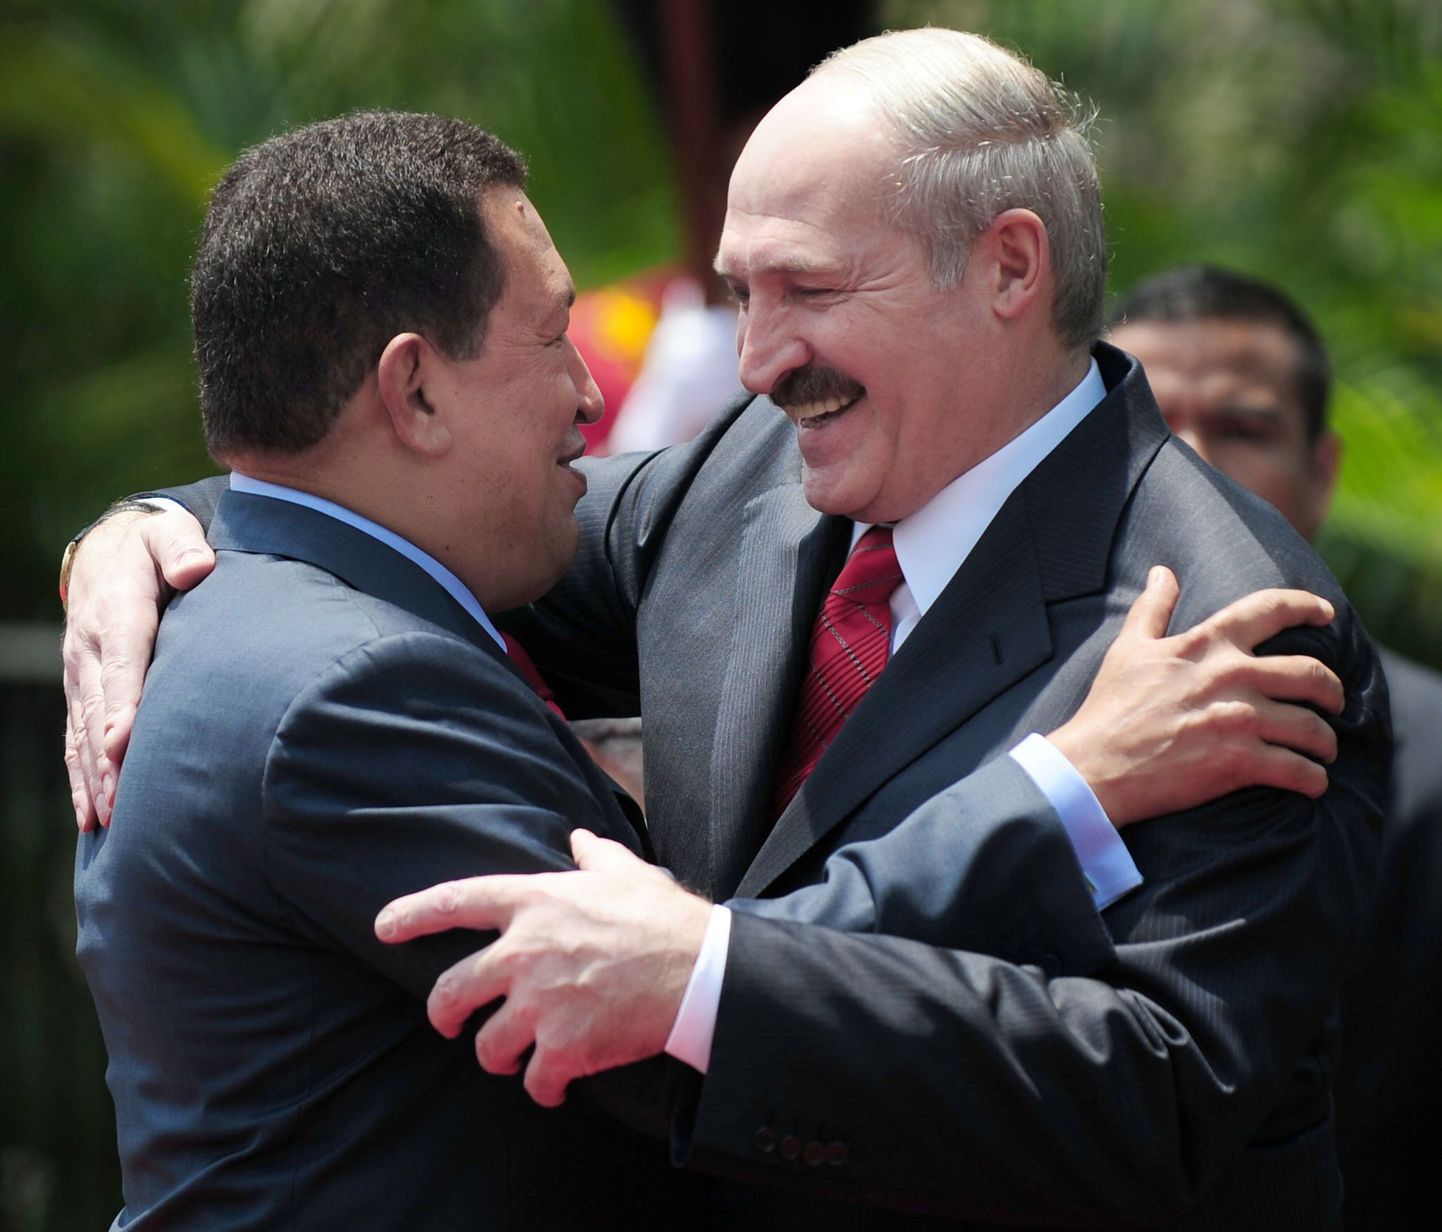 Уго Чавес обнимает Александра Лукашенко во время визита последнего в Венесуэлу 15 марта 2010 года.